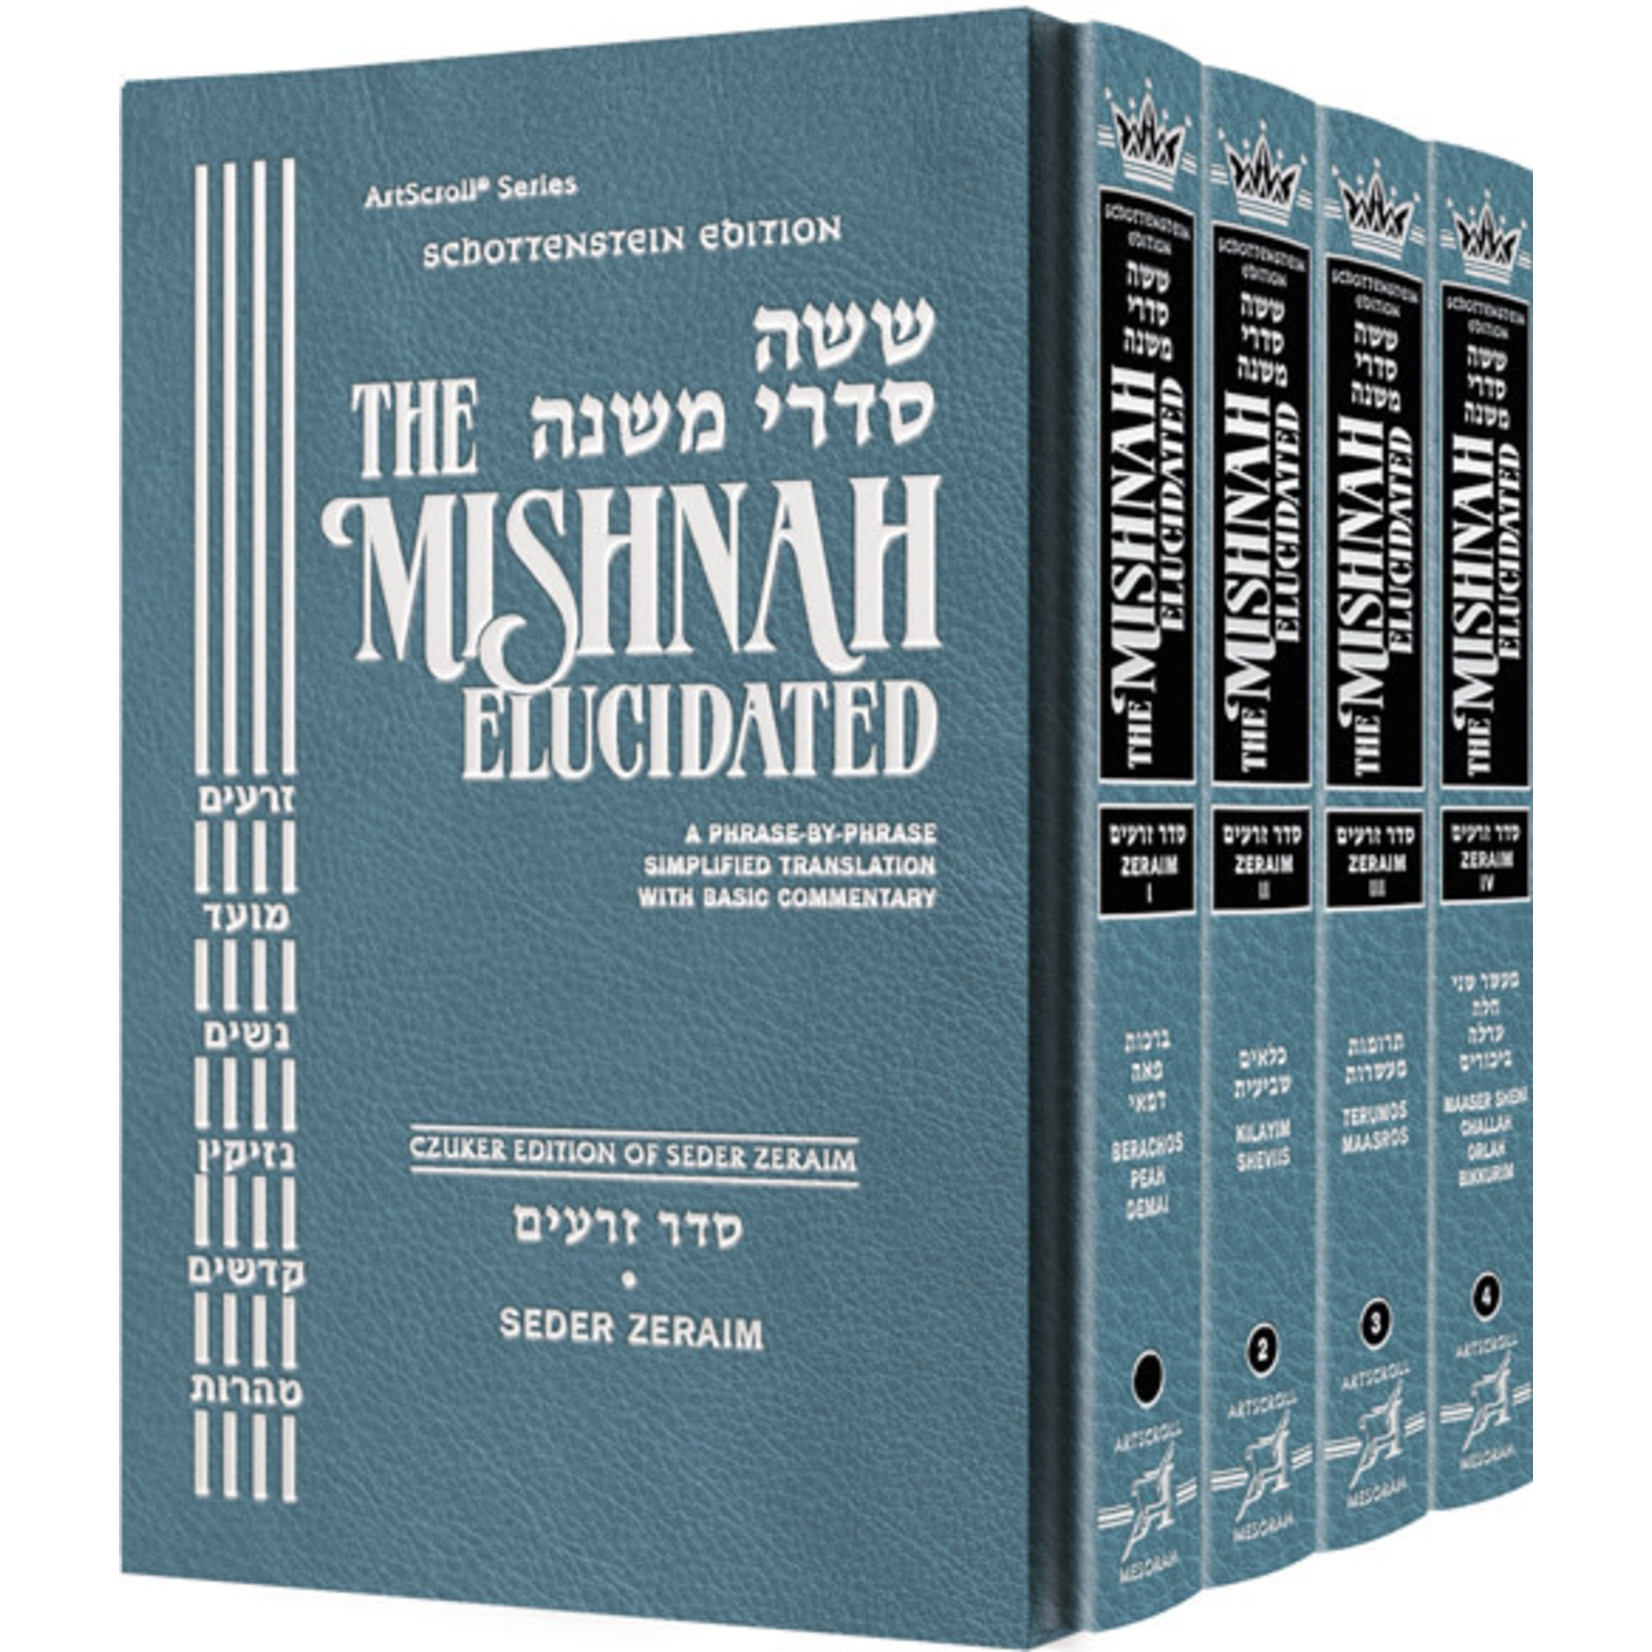 Seder Zeraim Set - ArtScroll Schottenstein Edition Hebrew/English Elucidated Mishnah, Full Size